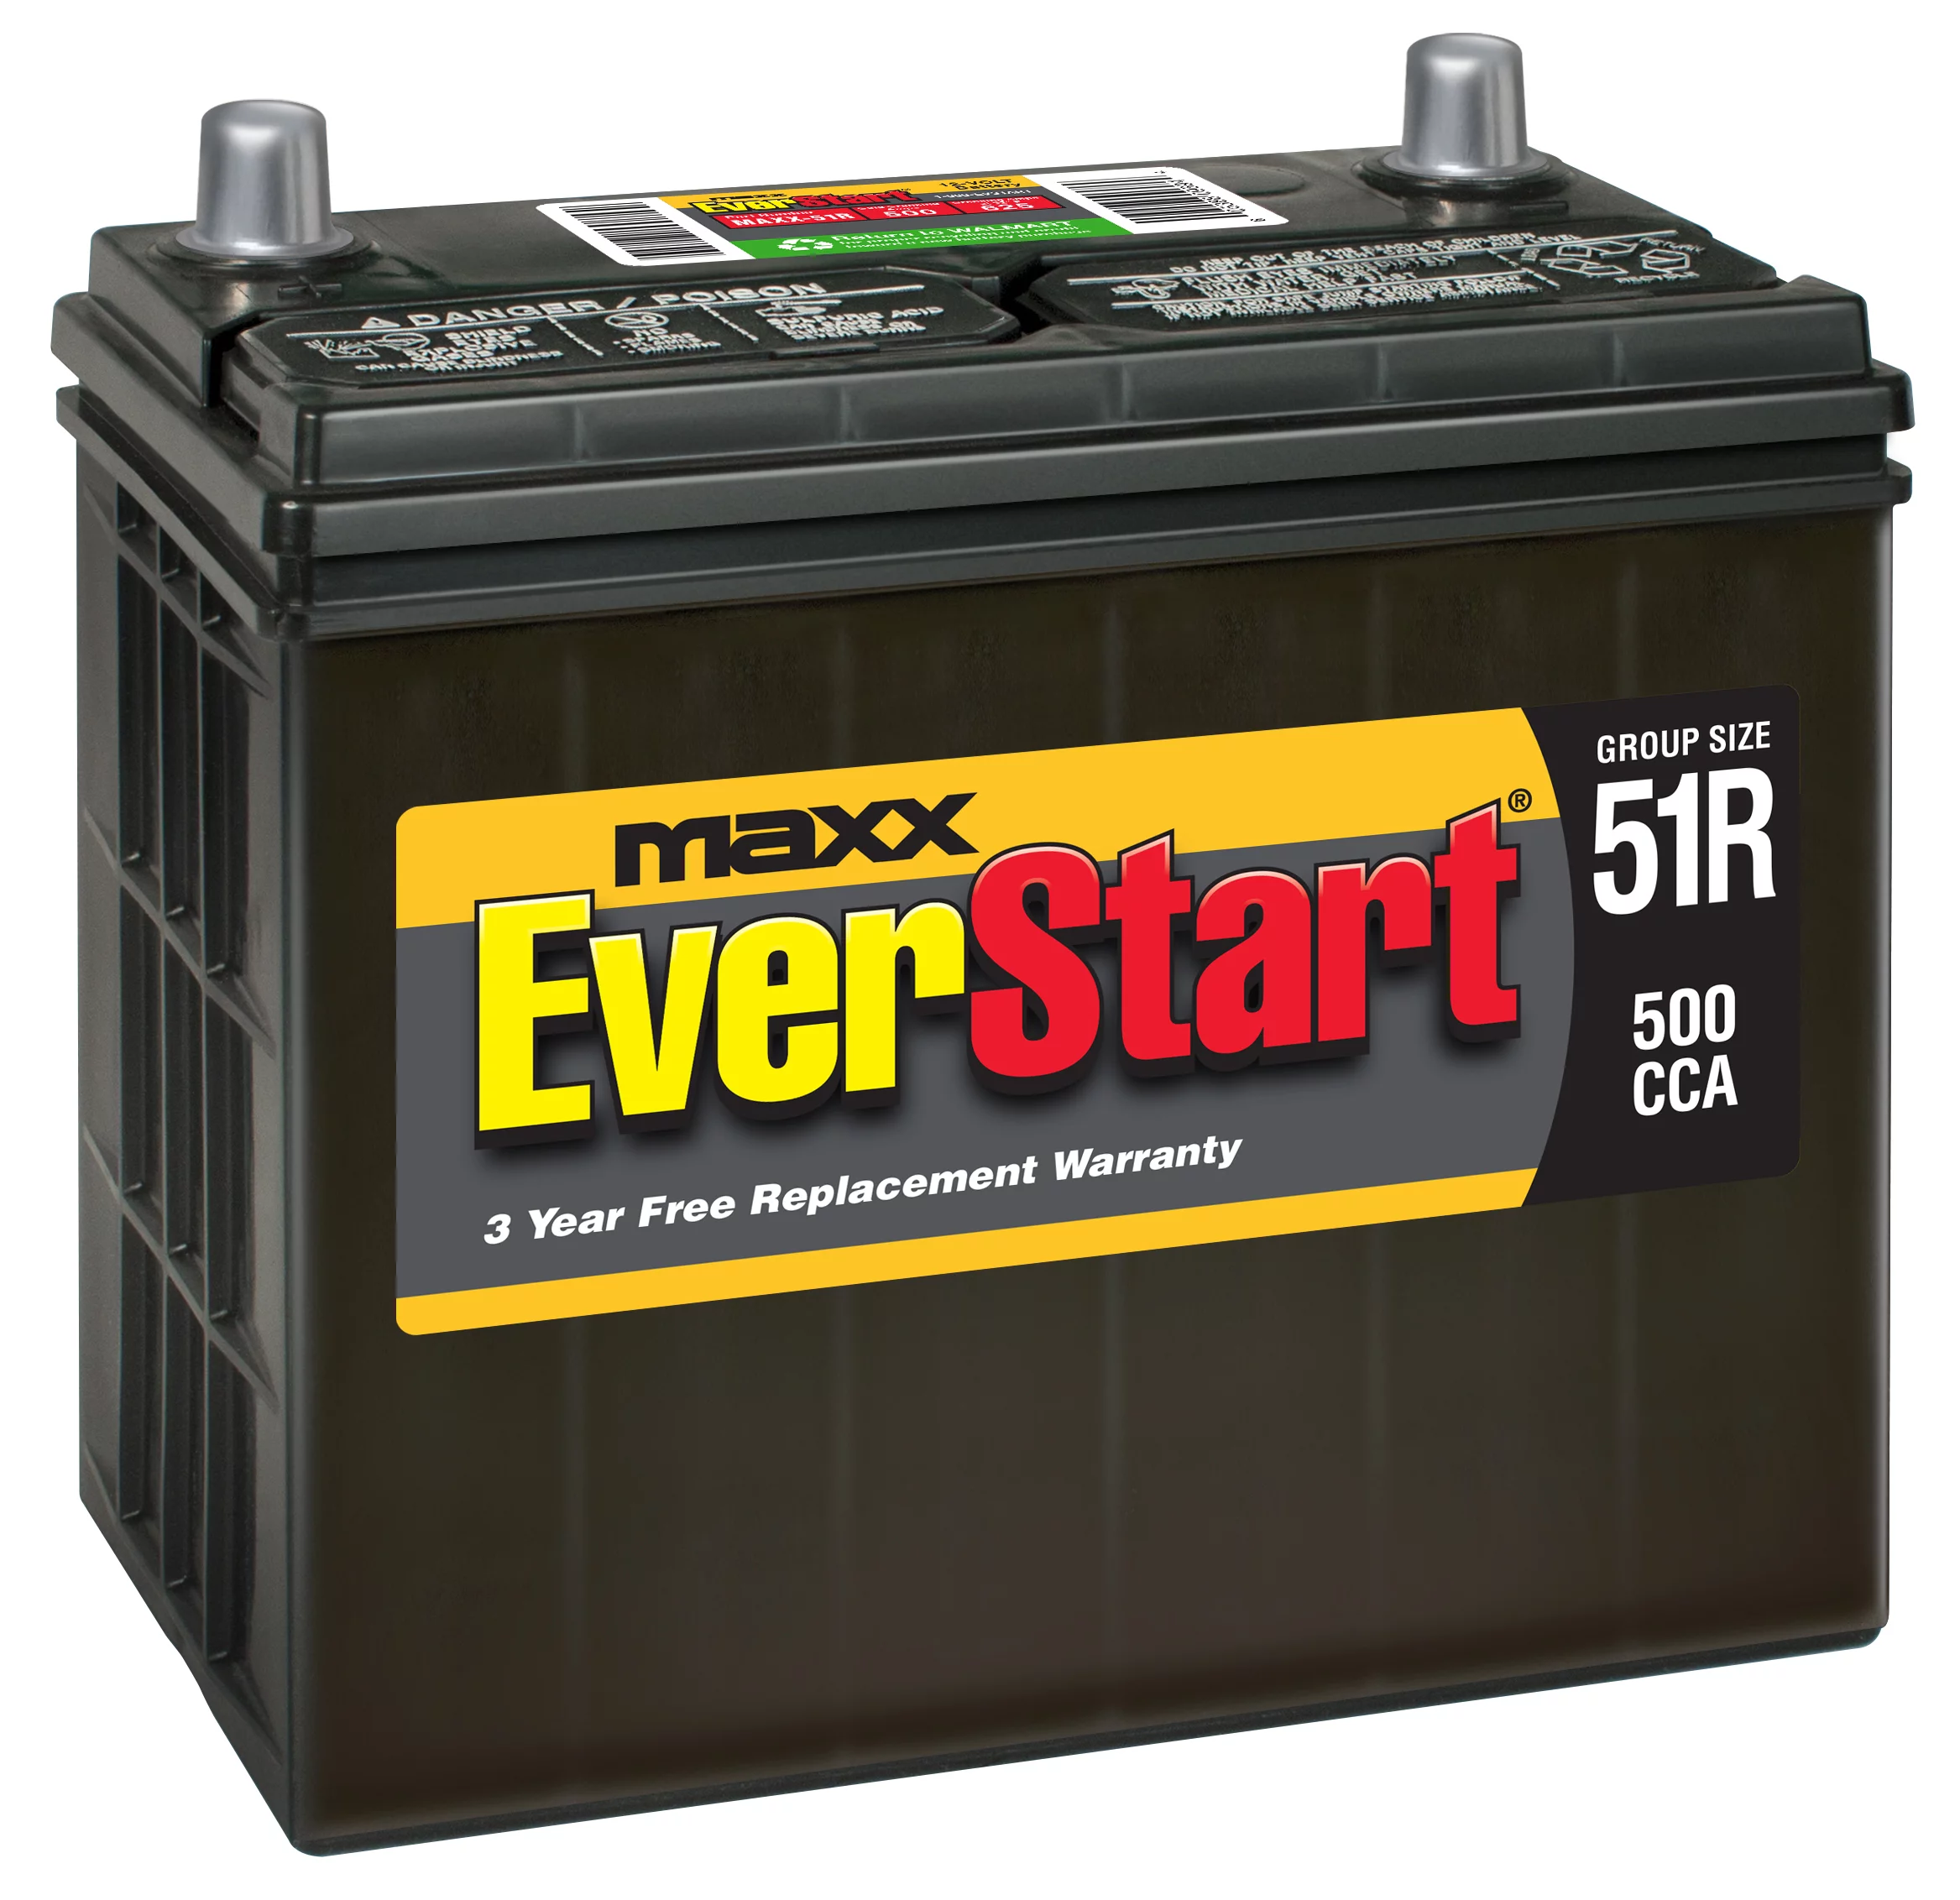 EverStart Maxx Lead Acid Automotive Battery, Group Size 51 12 Volt